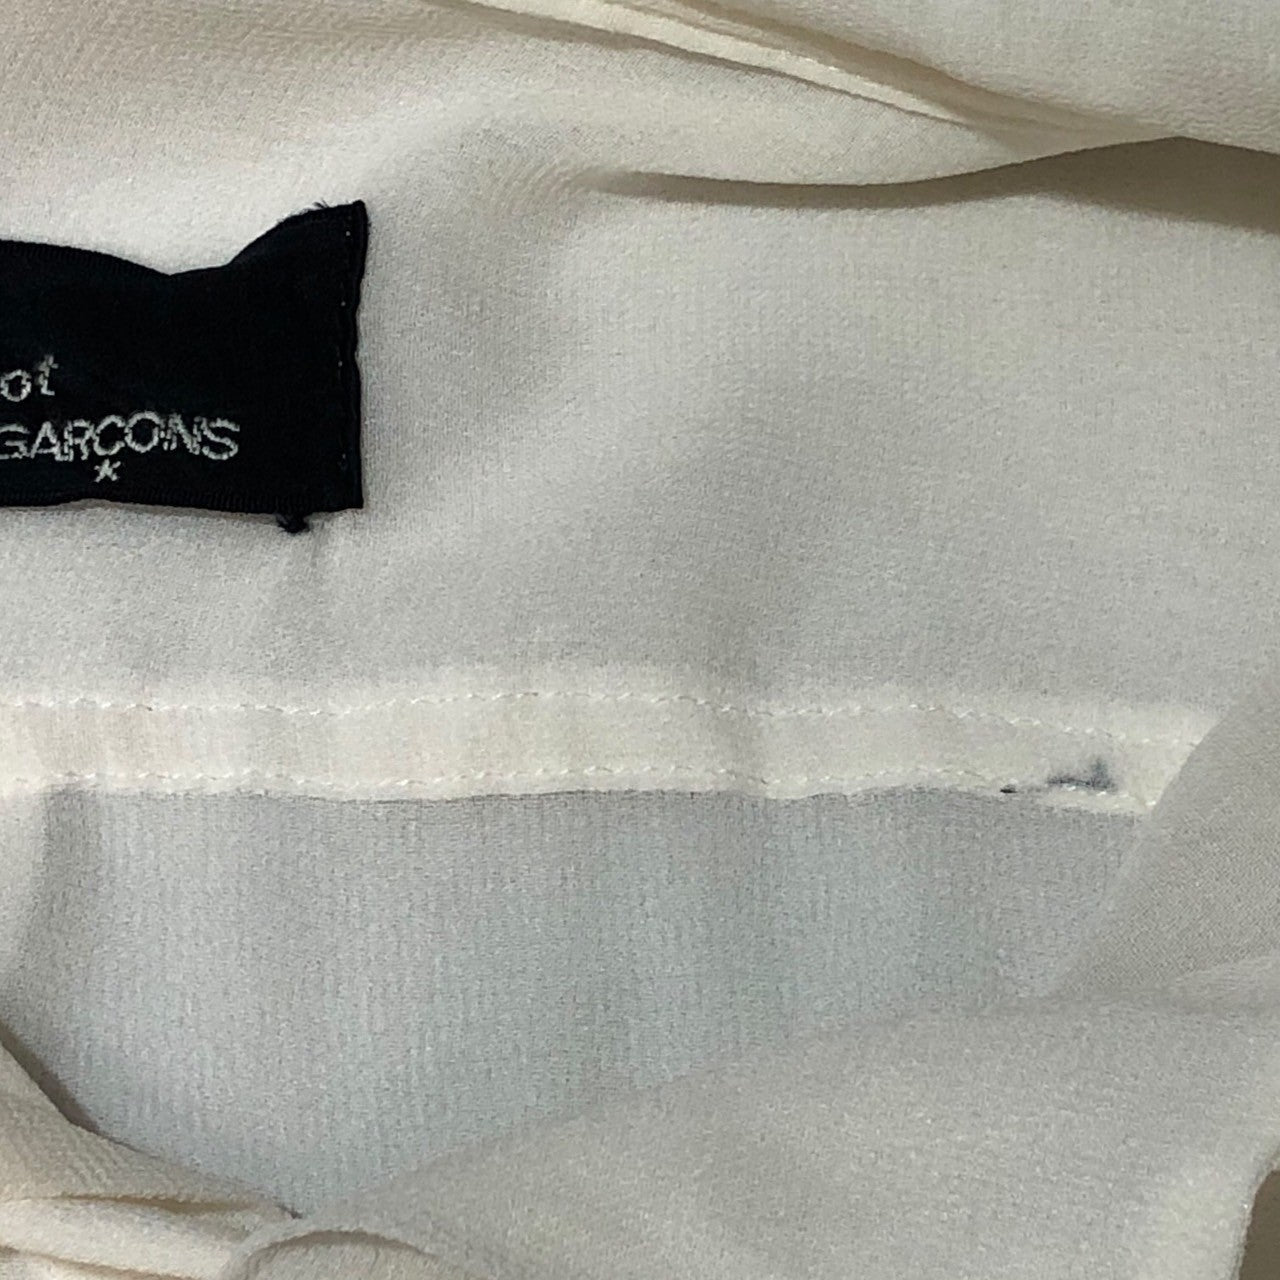 tricot COMME des GARCONS(トリココムデギャルソン) 80's see-through rayon shirt シースルーレーヨンシャツ TB-110020 表記なし(M程度) ホワイト AD1988